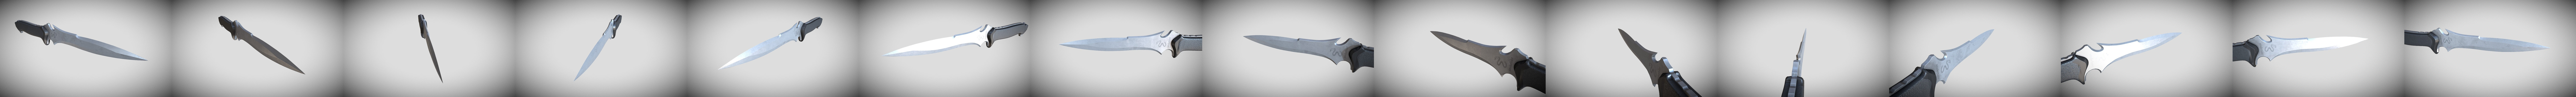 Resident Evil 4 Remake - Jack Krauser combat knife 3D model 3D printable